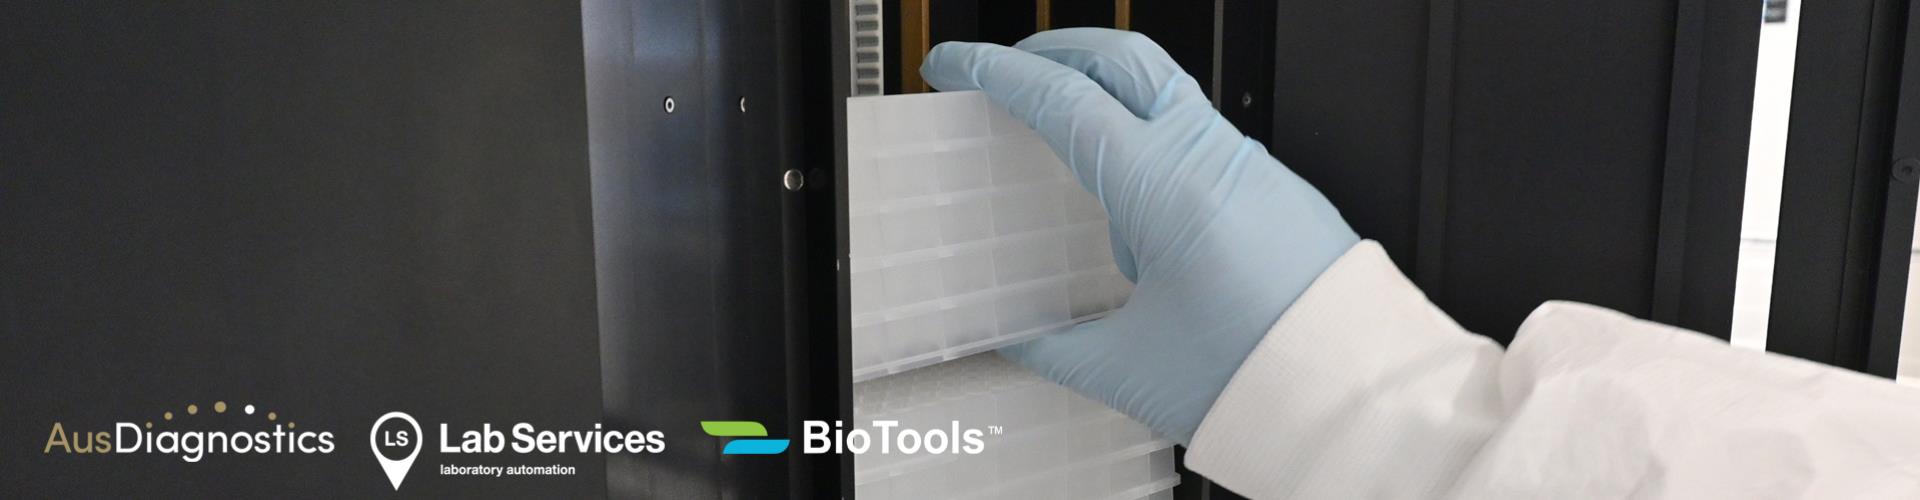 AusDiagnostics en BioTools